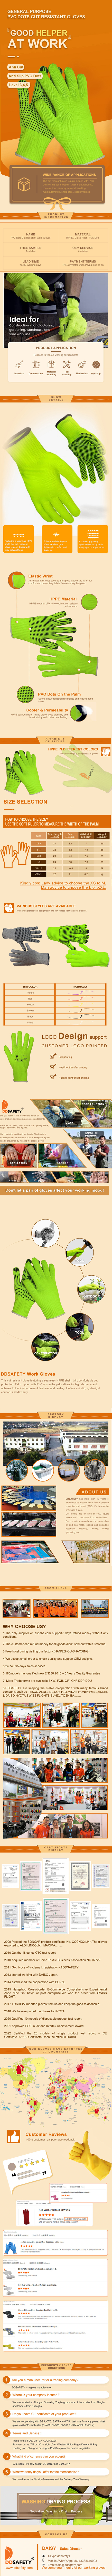 Hi-Viz Hppe Knit Cut Resistant Safety Work Gloves With Anti Slip Pvc Dotted On Palm - DCR213 Hi-Viz Hppe Knit Cut Resistant Safety Work Gloves With Anti Slip Pvc Dotted On Palm - DCR213 gloves,cut resistant gloves,pvc dotted gloves,Hi-Viz cut gloves,PVC Dotted on Palm